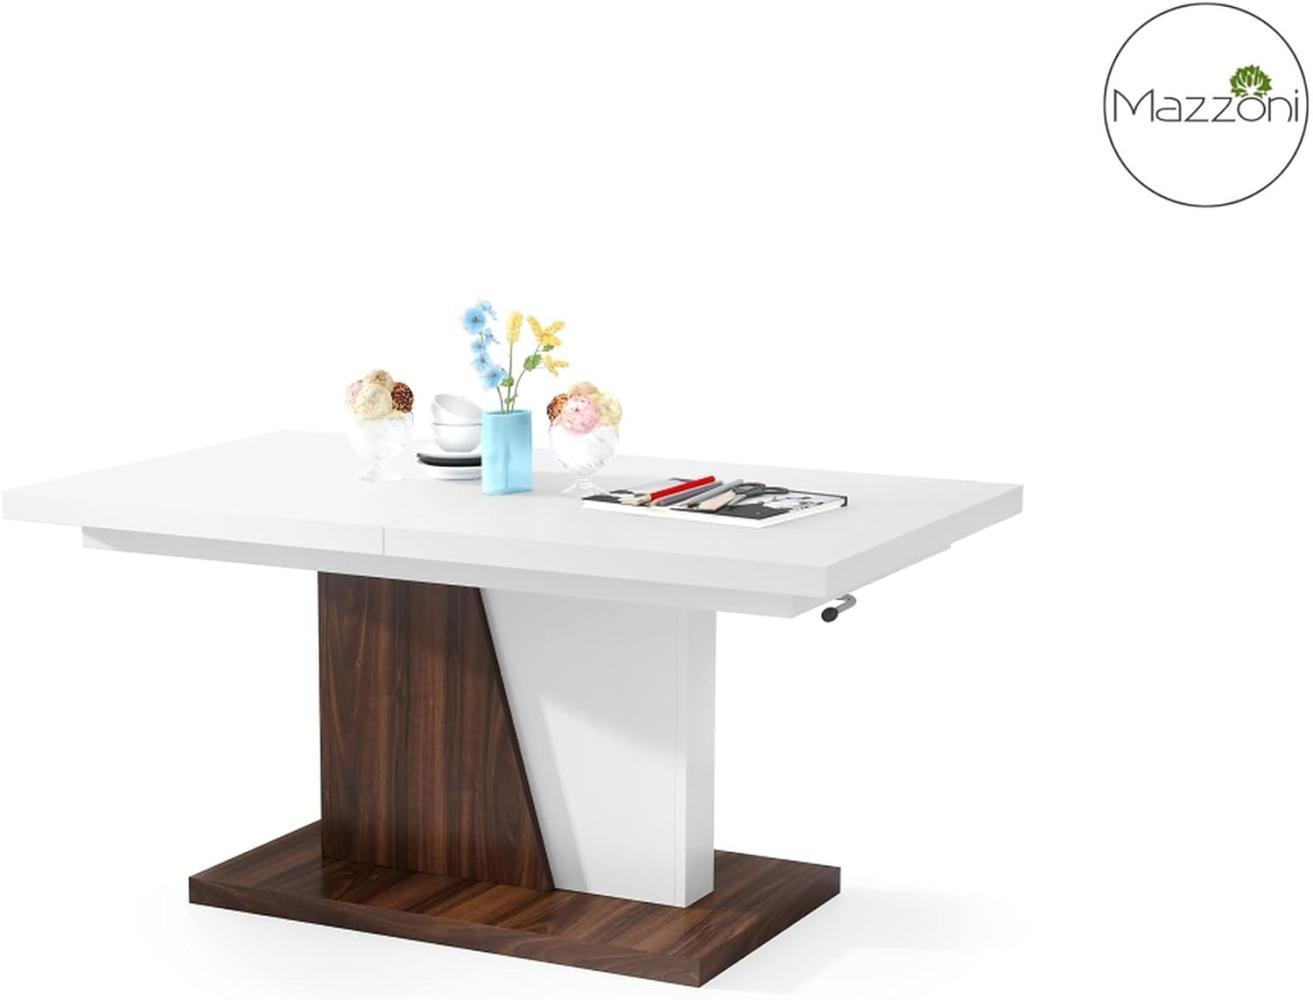 Mazzoni Design Couchtisch Tisch Grand Noir stufenlos höhenverstellbar ausziehbar 120 bis 180cm Esstisch (Weiß matt/Nussbaum) Bild 1